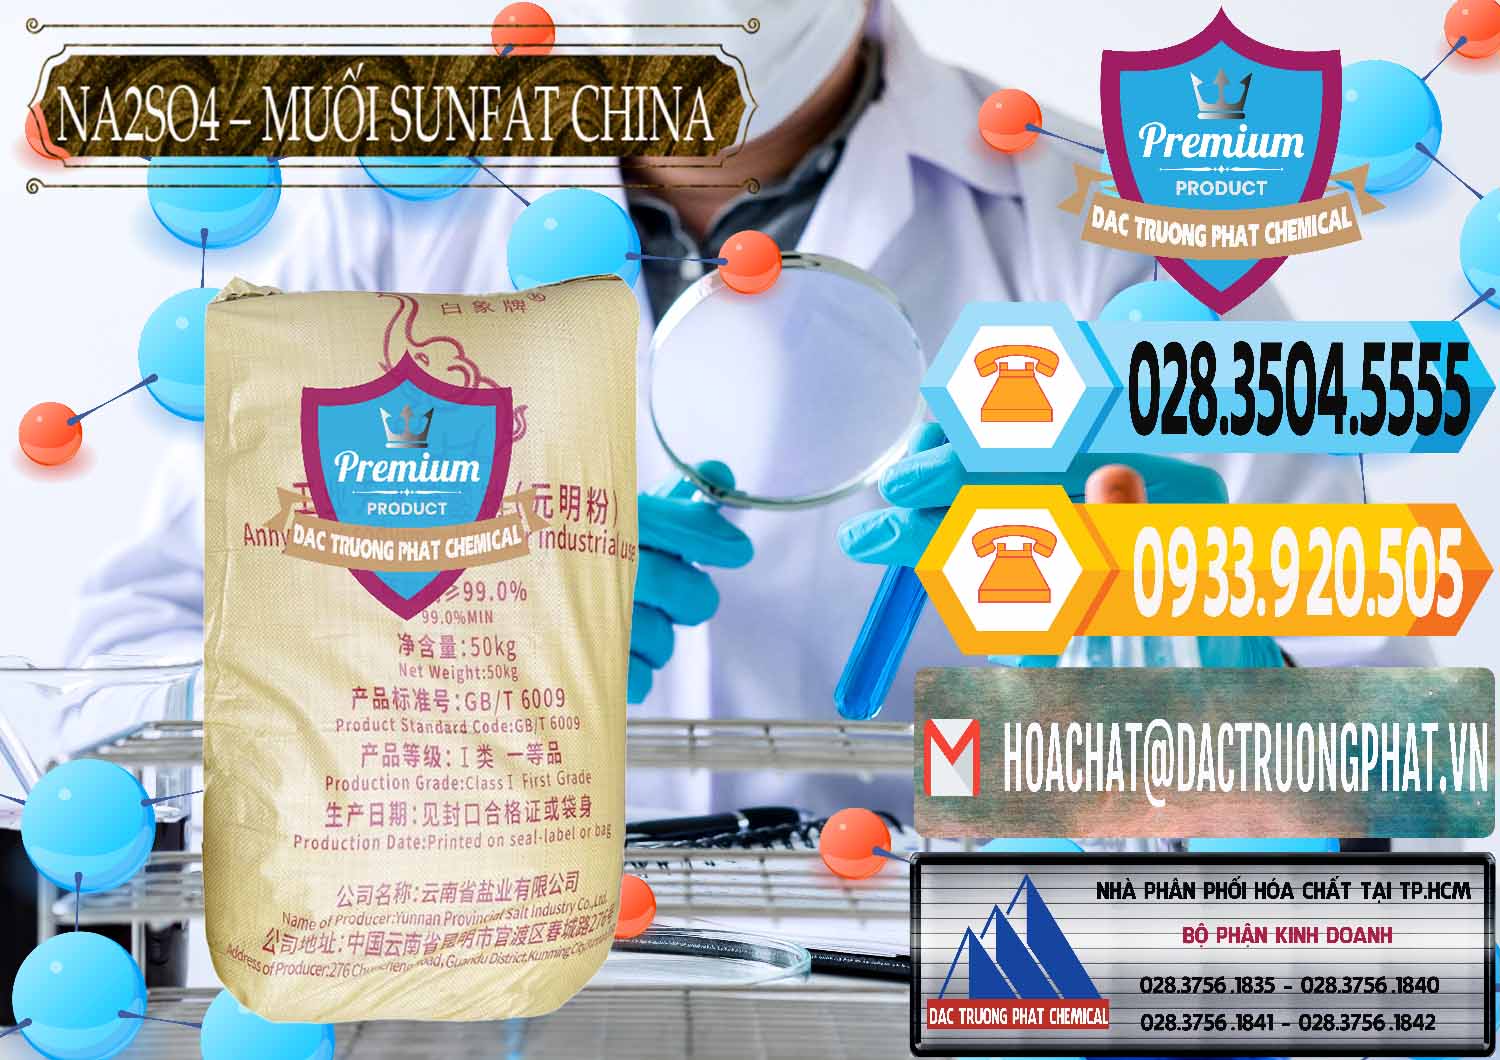 Cty chuyên bán và cung cấp Sodium Sulphate - Muối Sunfat Na2SO4 Logo Con Voi Trung Quốc China - 0409 - Nhà cung ứng _ phân phối hóa chất tại TP.HCM - hoachattayrua.net